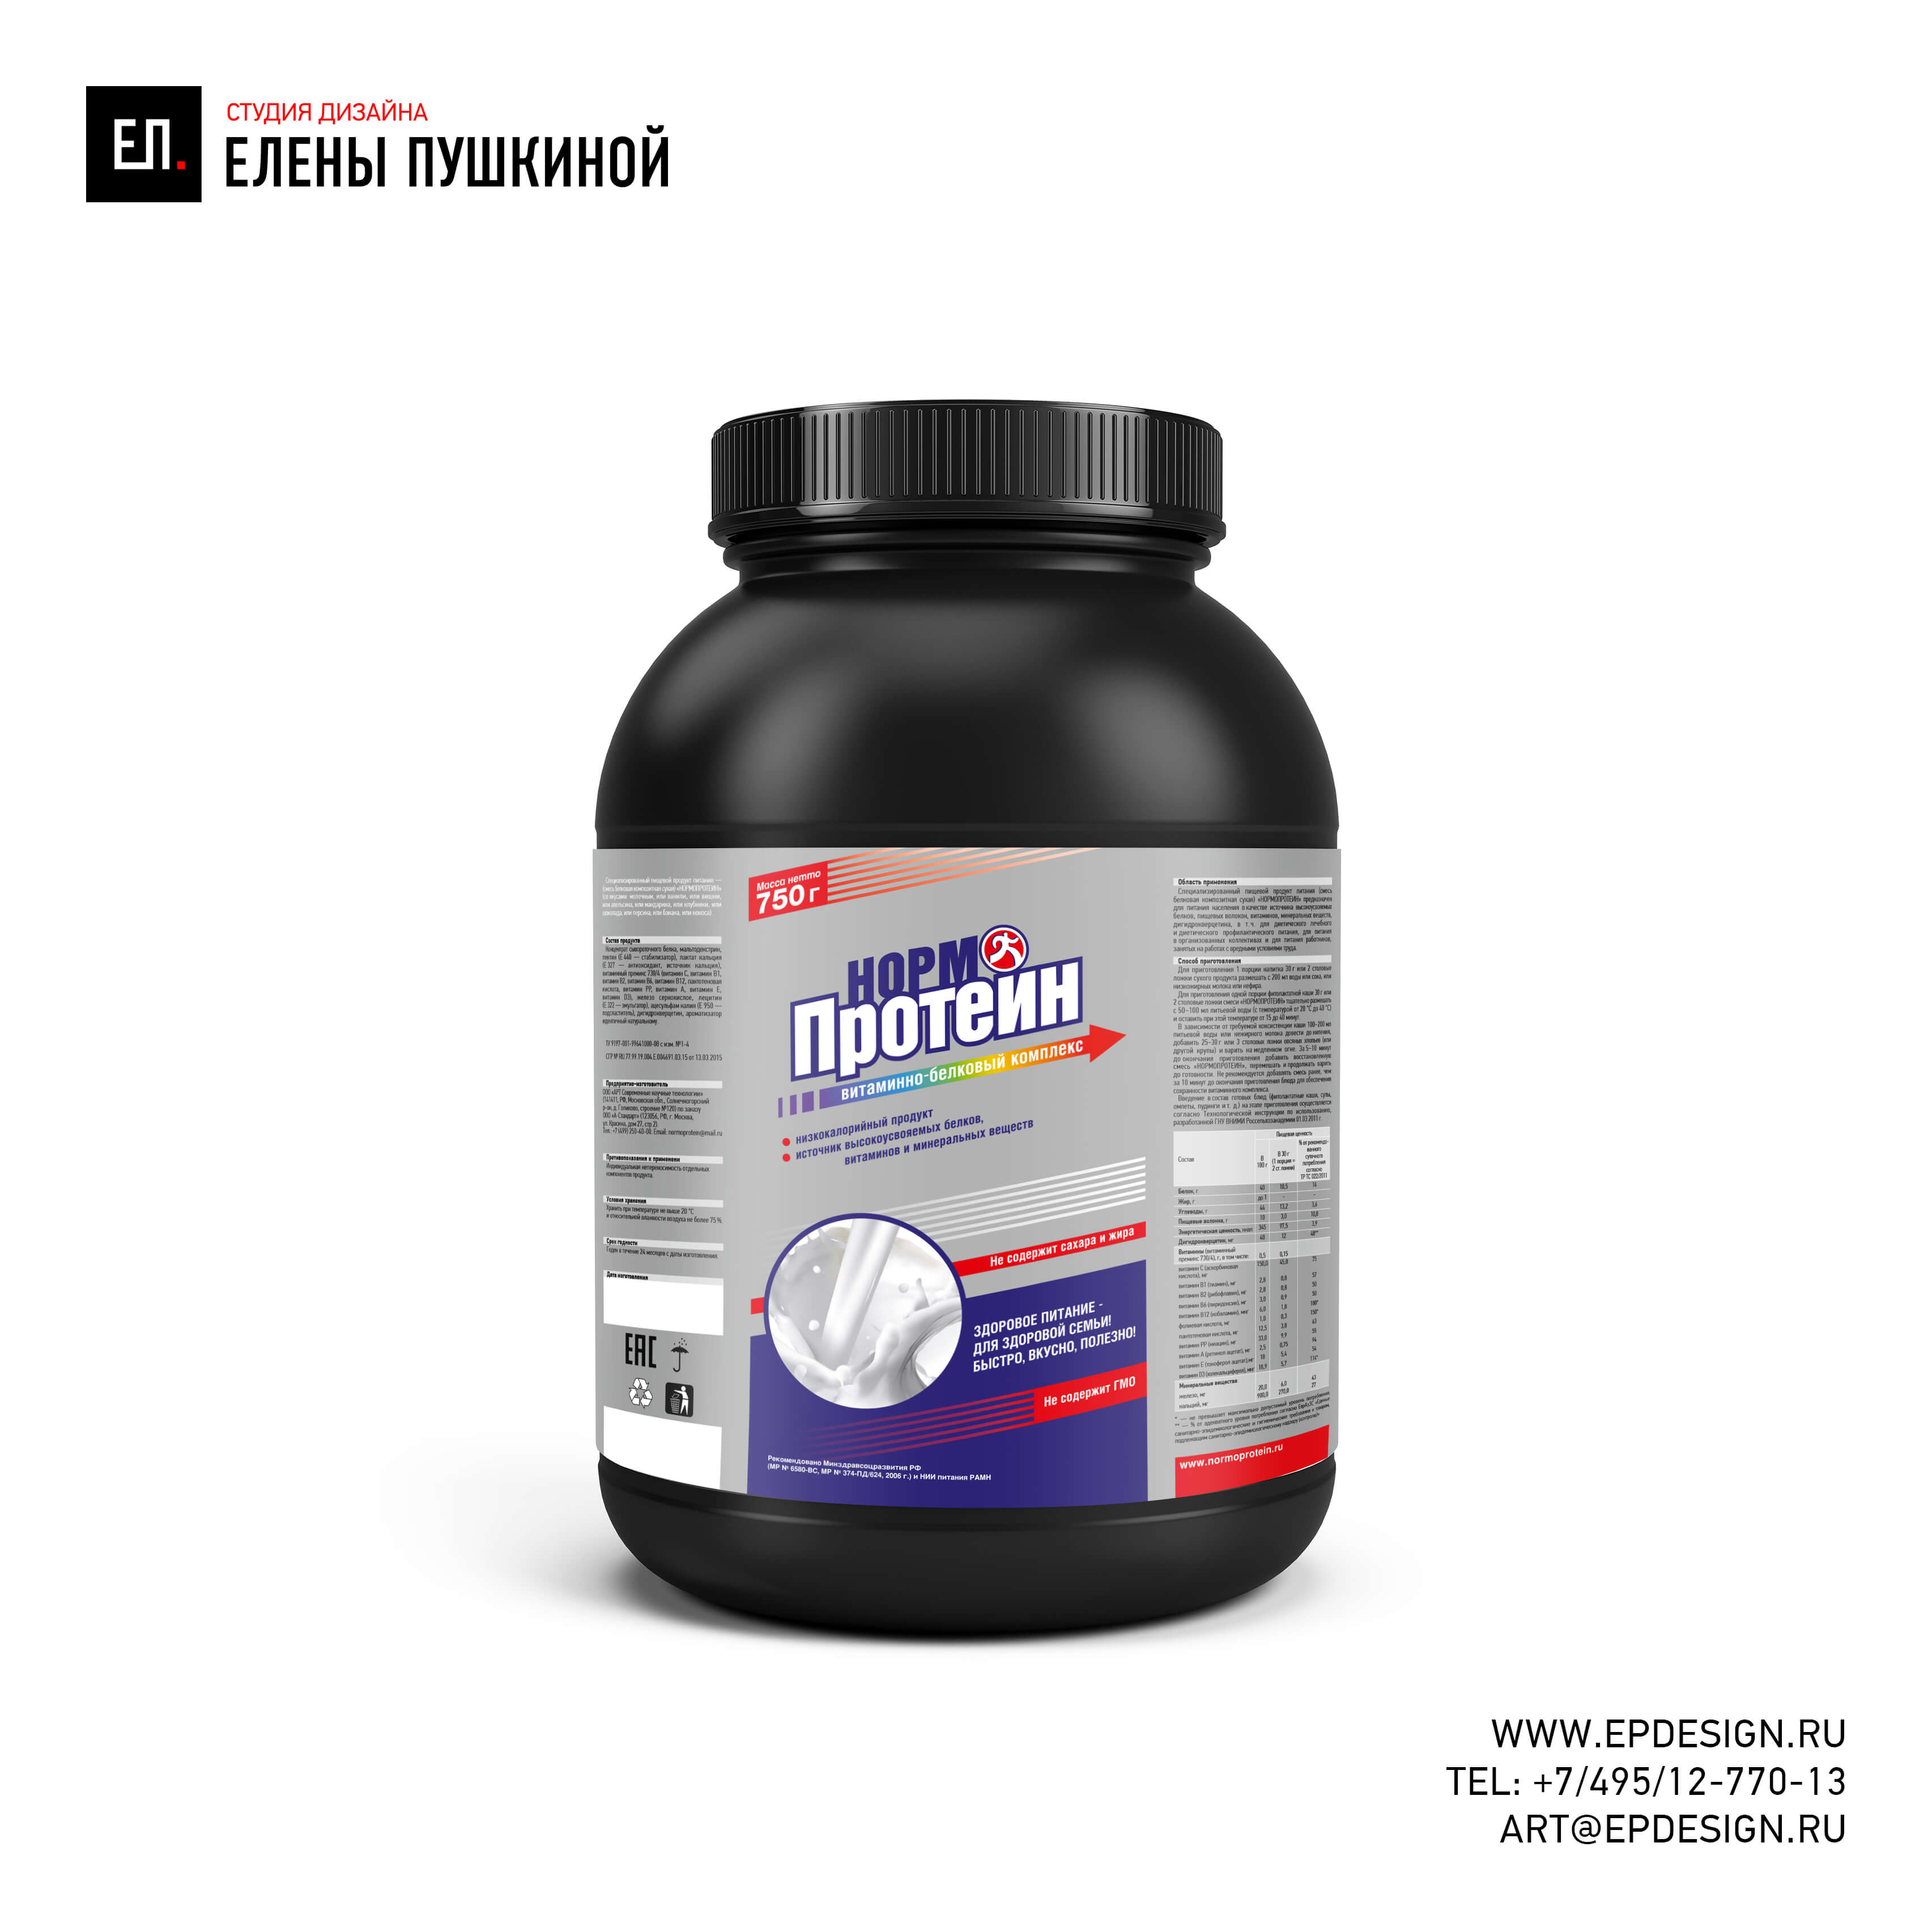 Дизайн этикетки для торговой марки НОРМОПРОТЕИН — витаминно-белковый комплекс Дизайн упаковки Портфолио